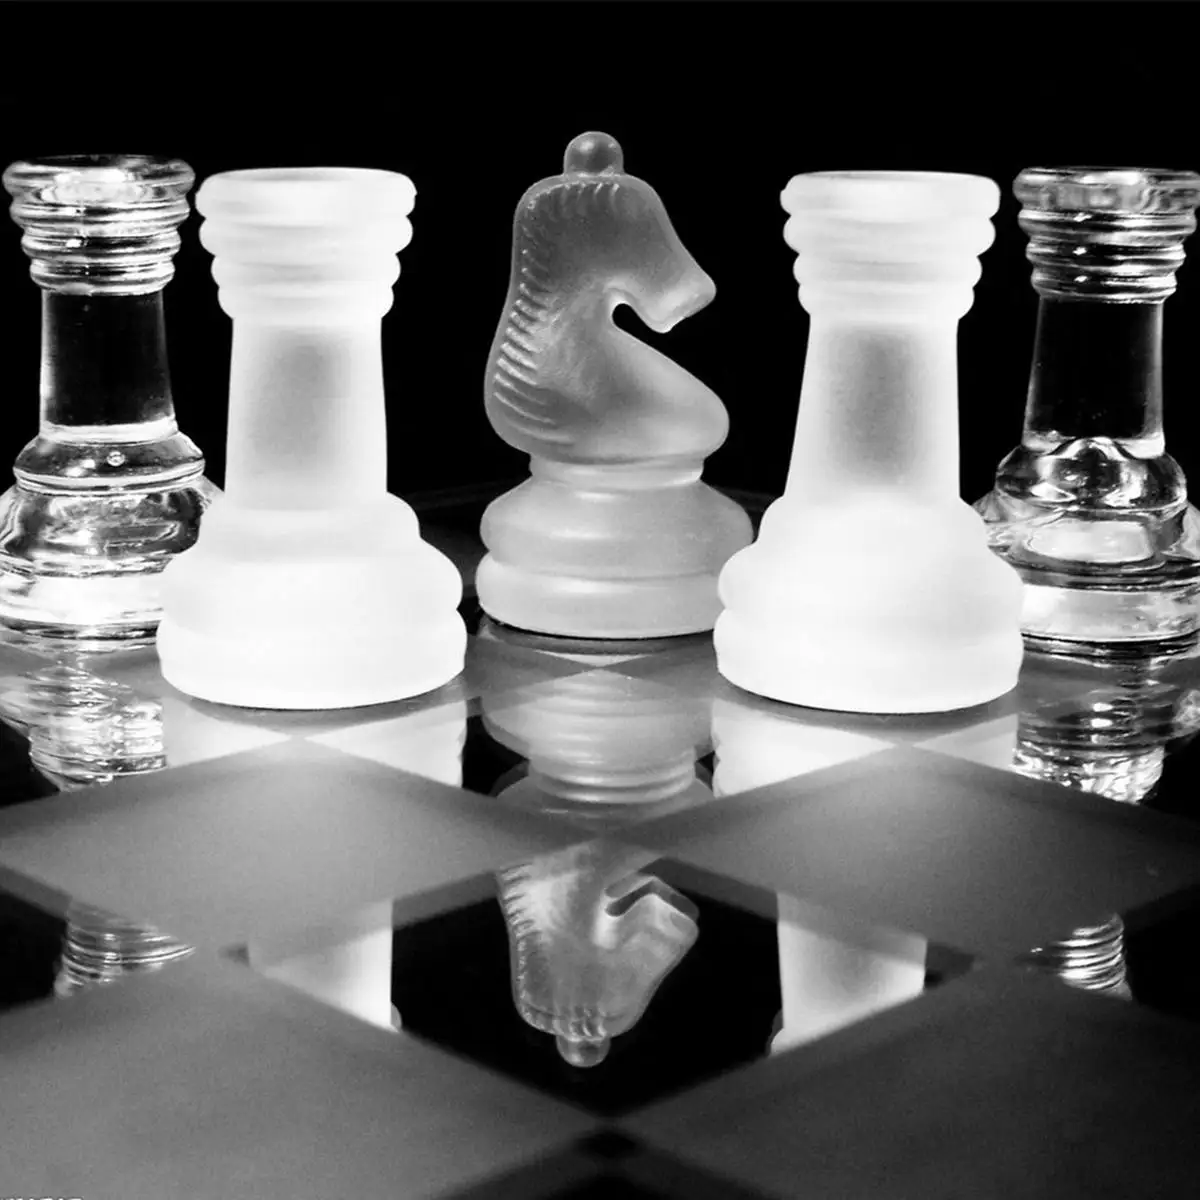 К9 стеклянные шахматы Роскошные элегантные международные Шахматные игры средняя упаковка для борьбы Международный шахматный набор Стеклянная Доска шахматная игра